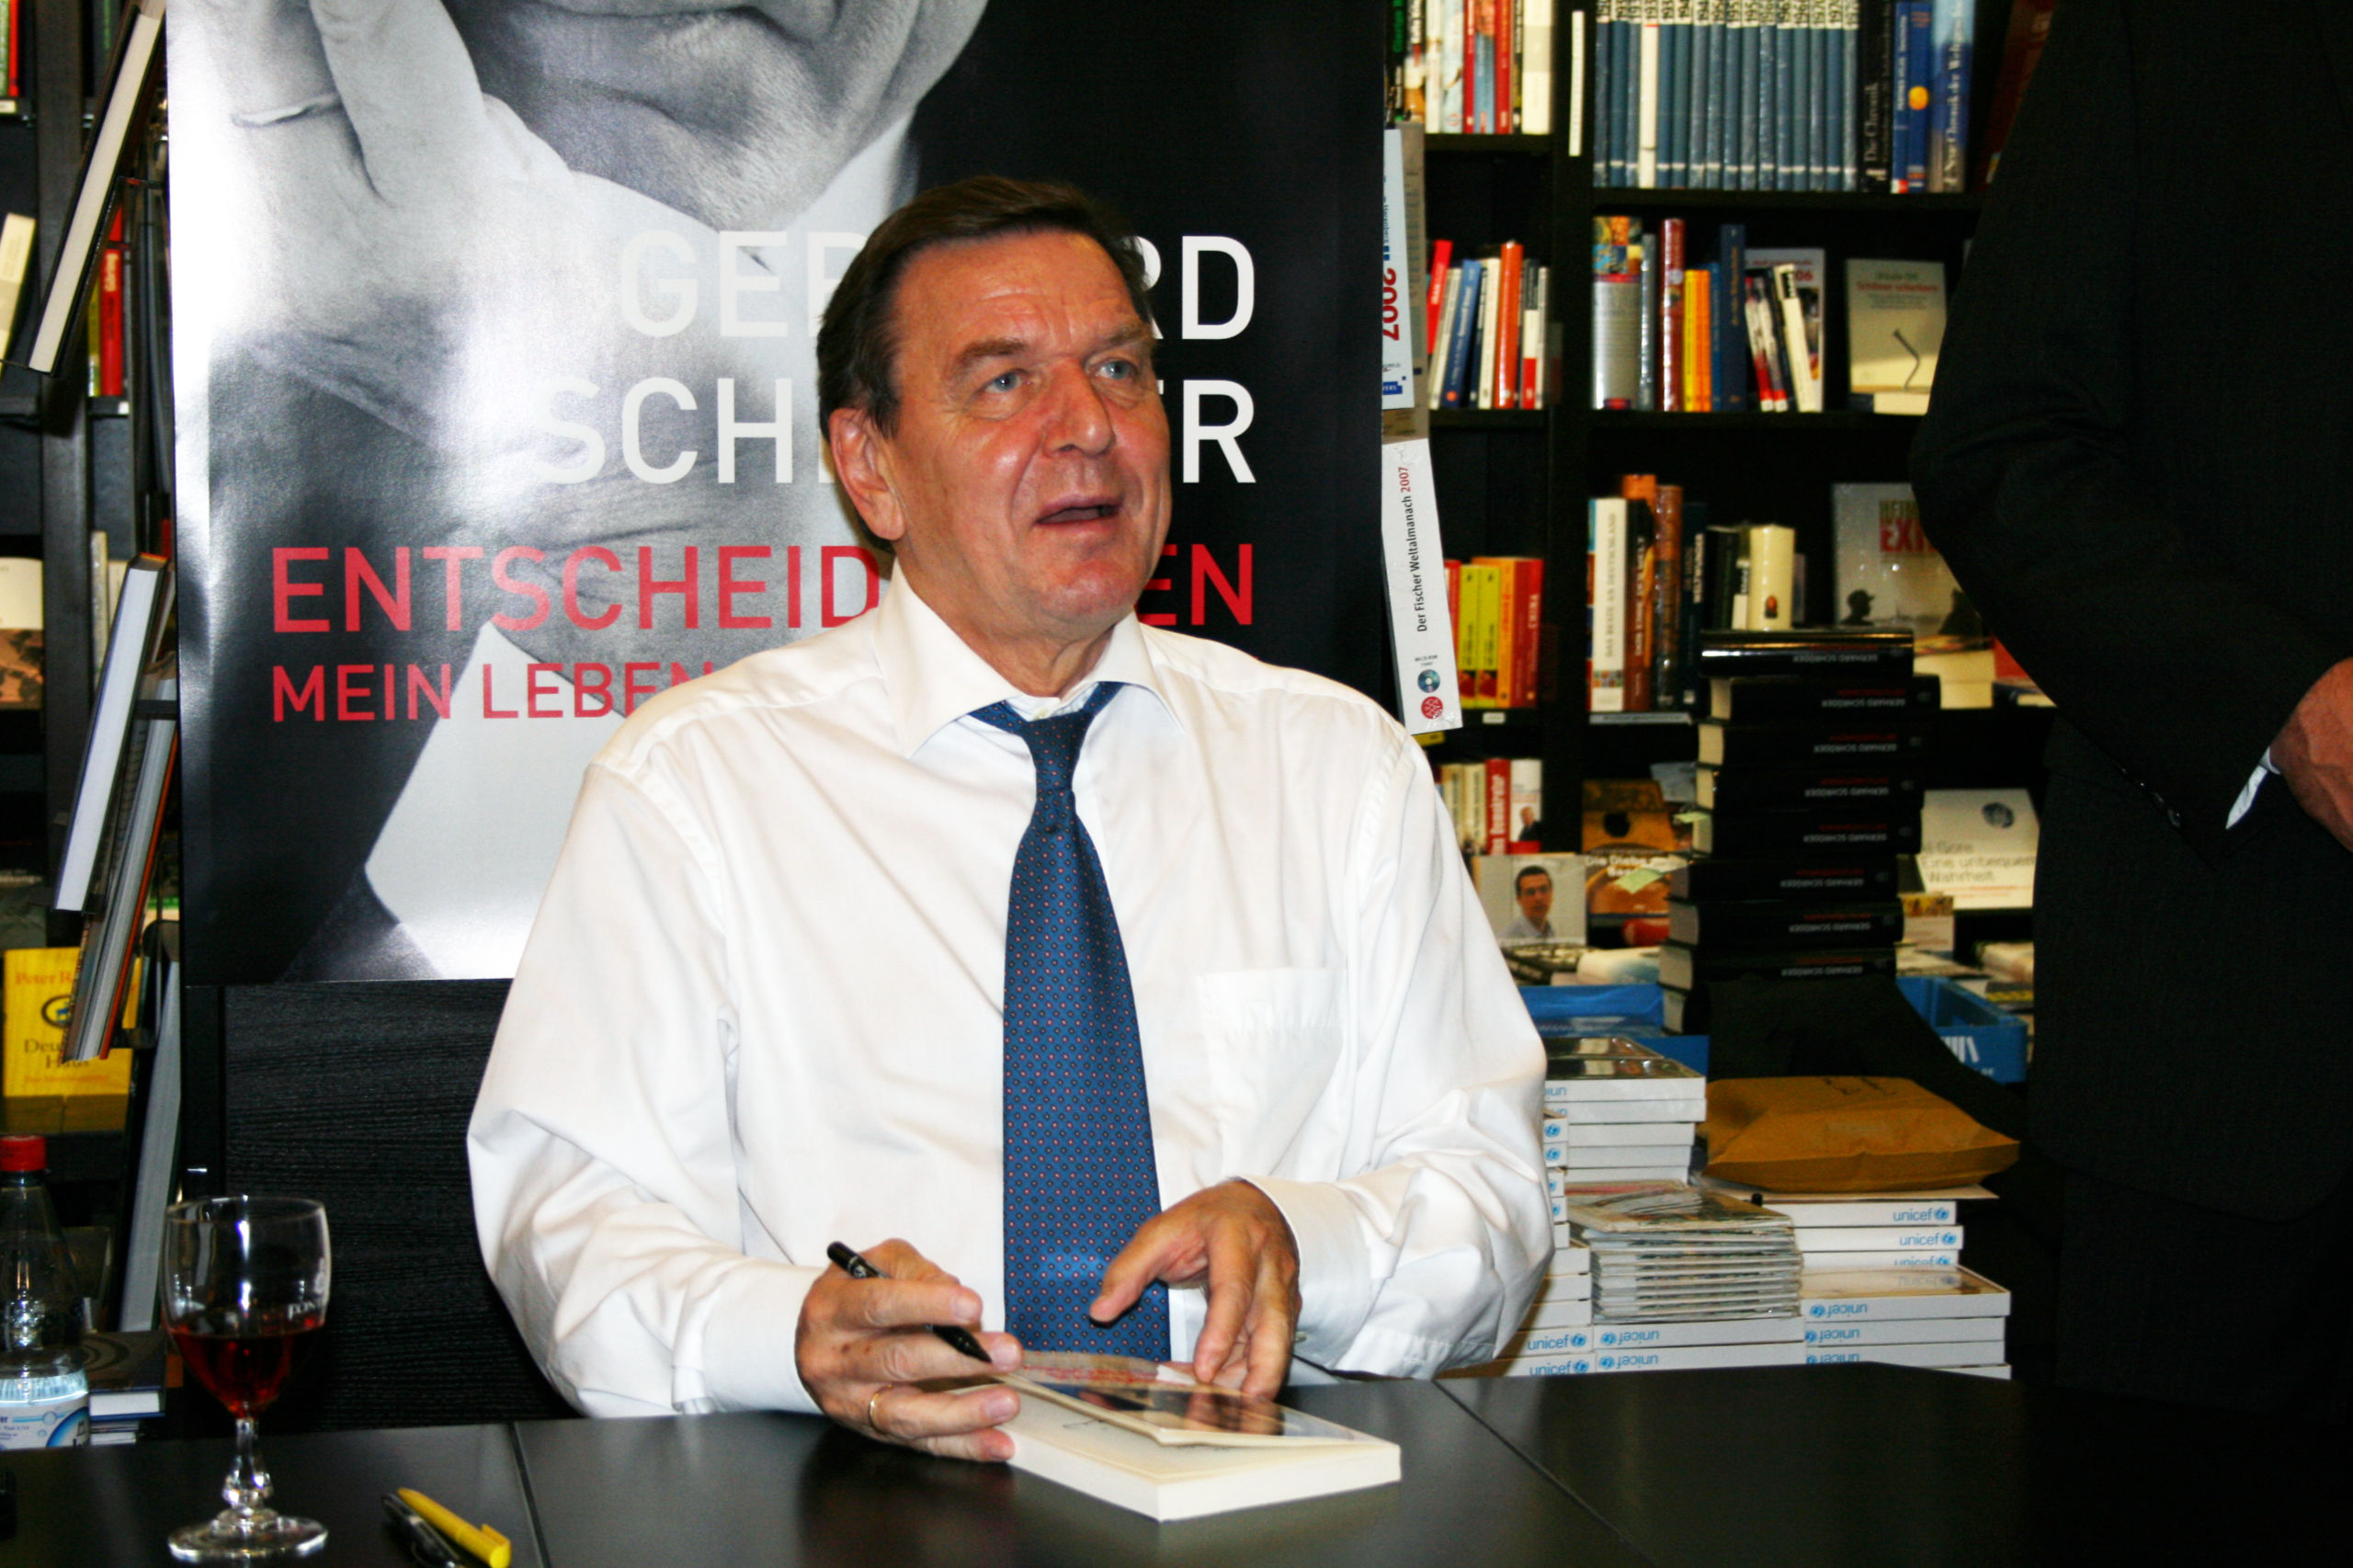 Gerhard Schröder bei einer Buchpräsentation.